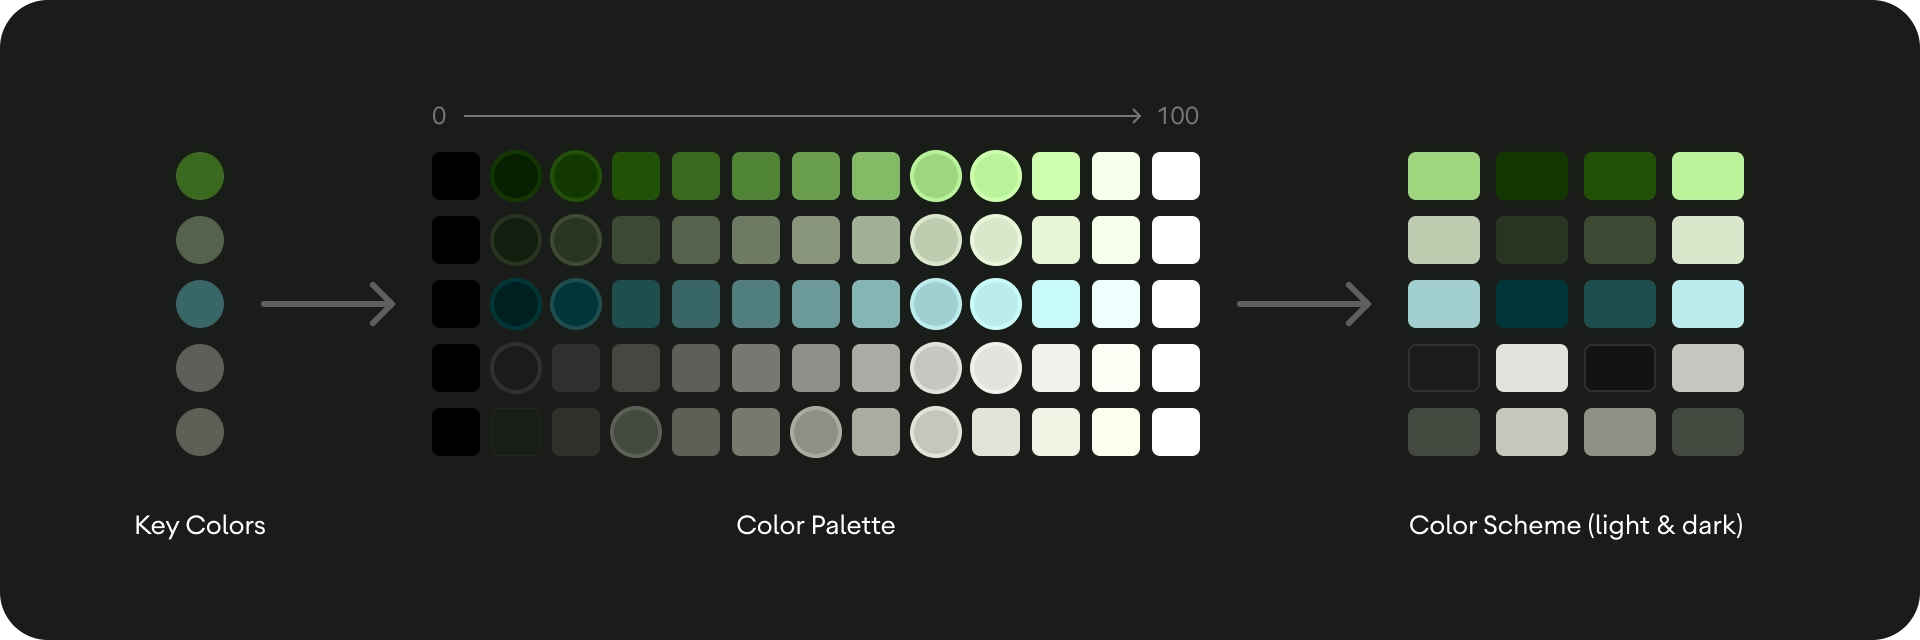 Color theme generation process